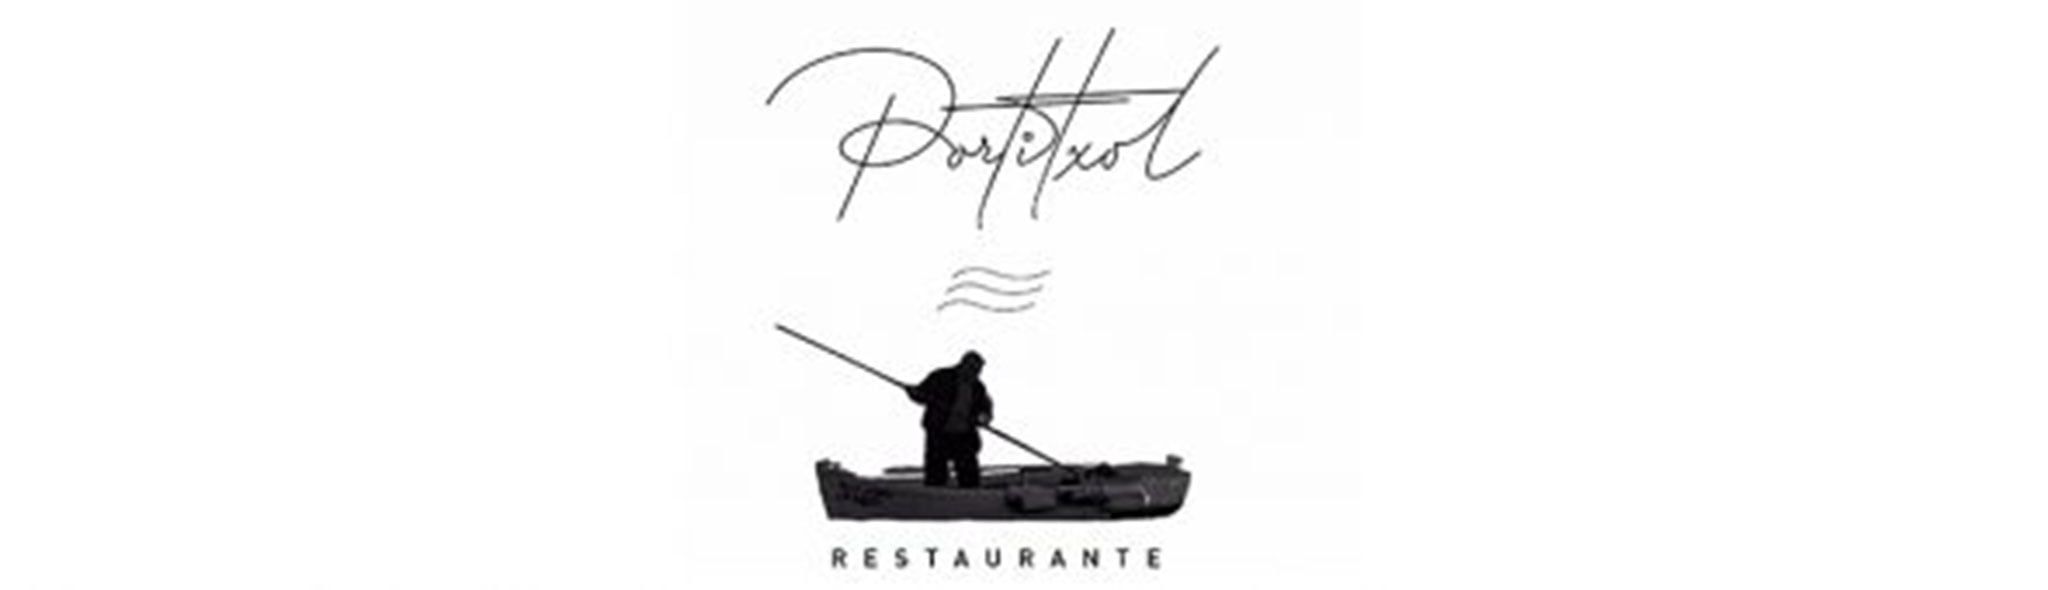 Logotipo del Restaurante Portitxol